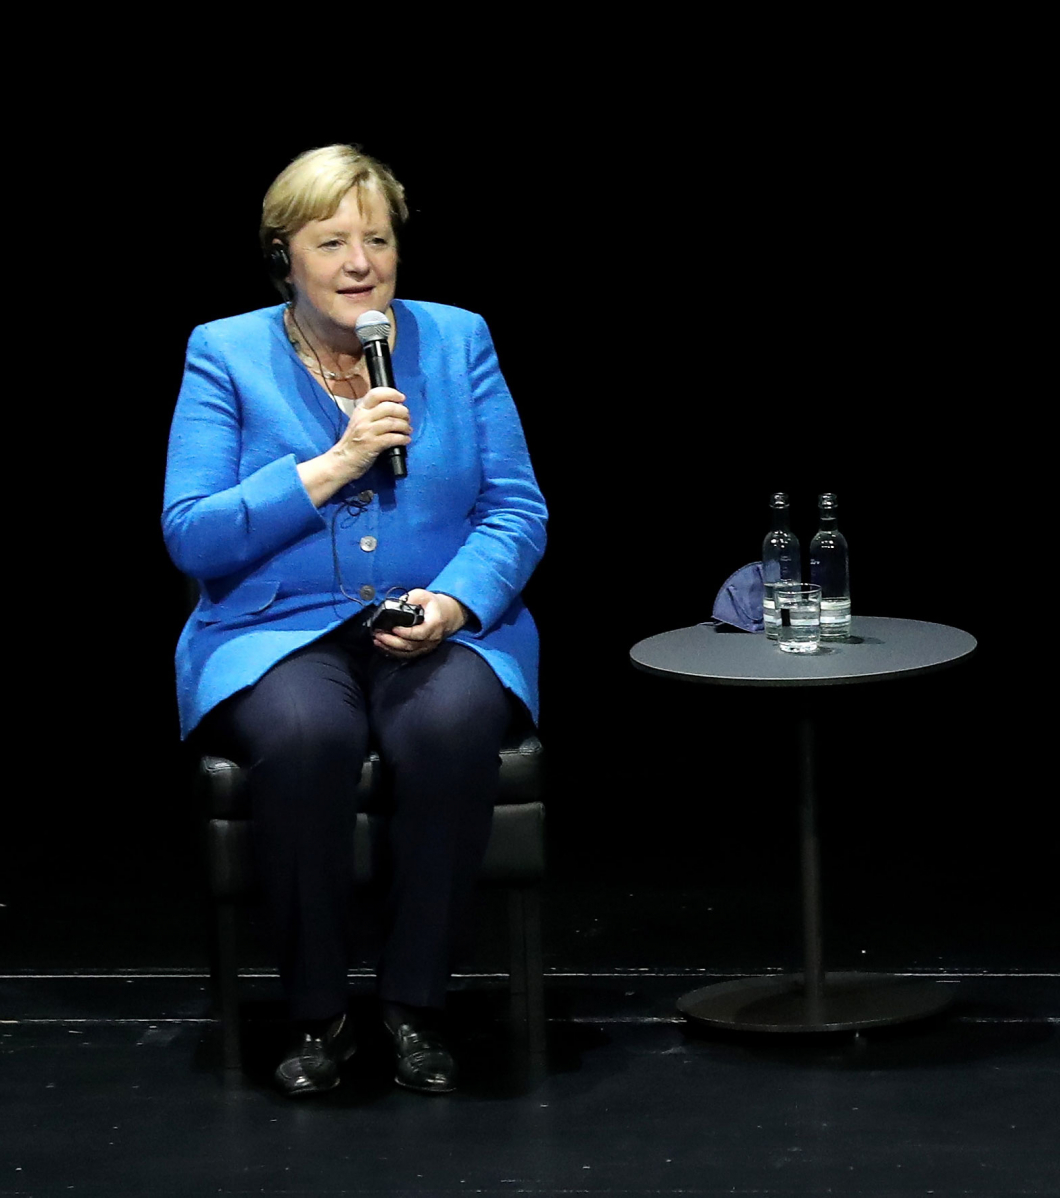 Végre válaszolt a kérdésre Merkel: feminista-e